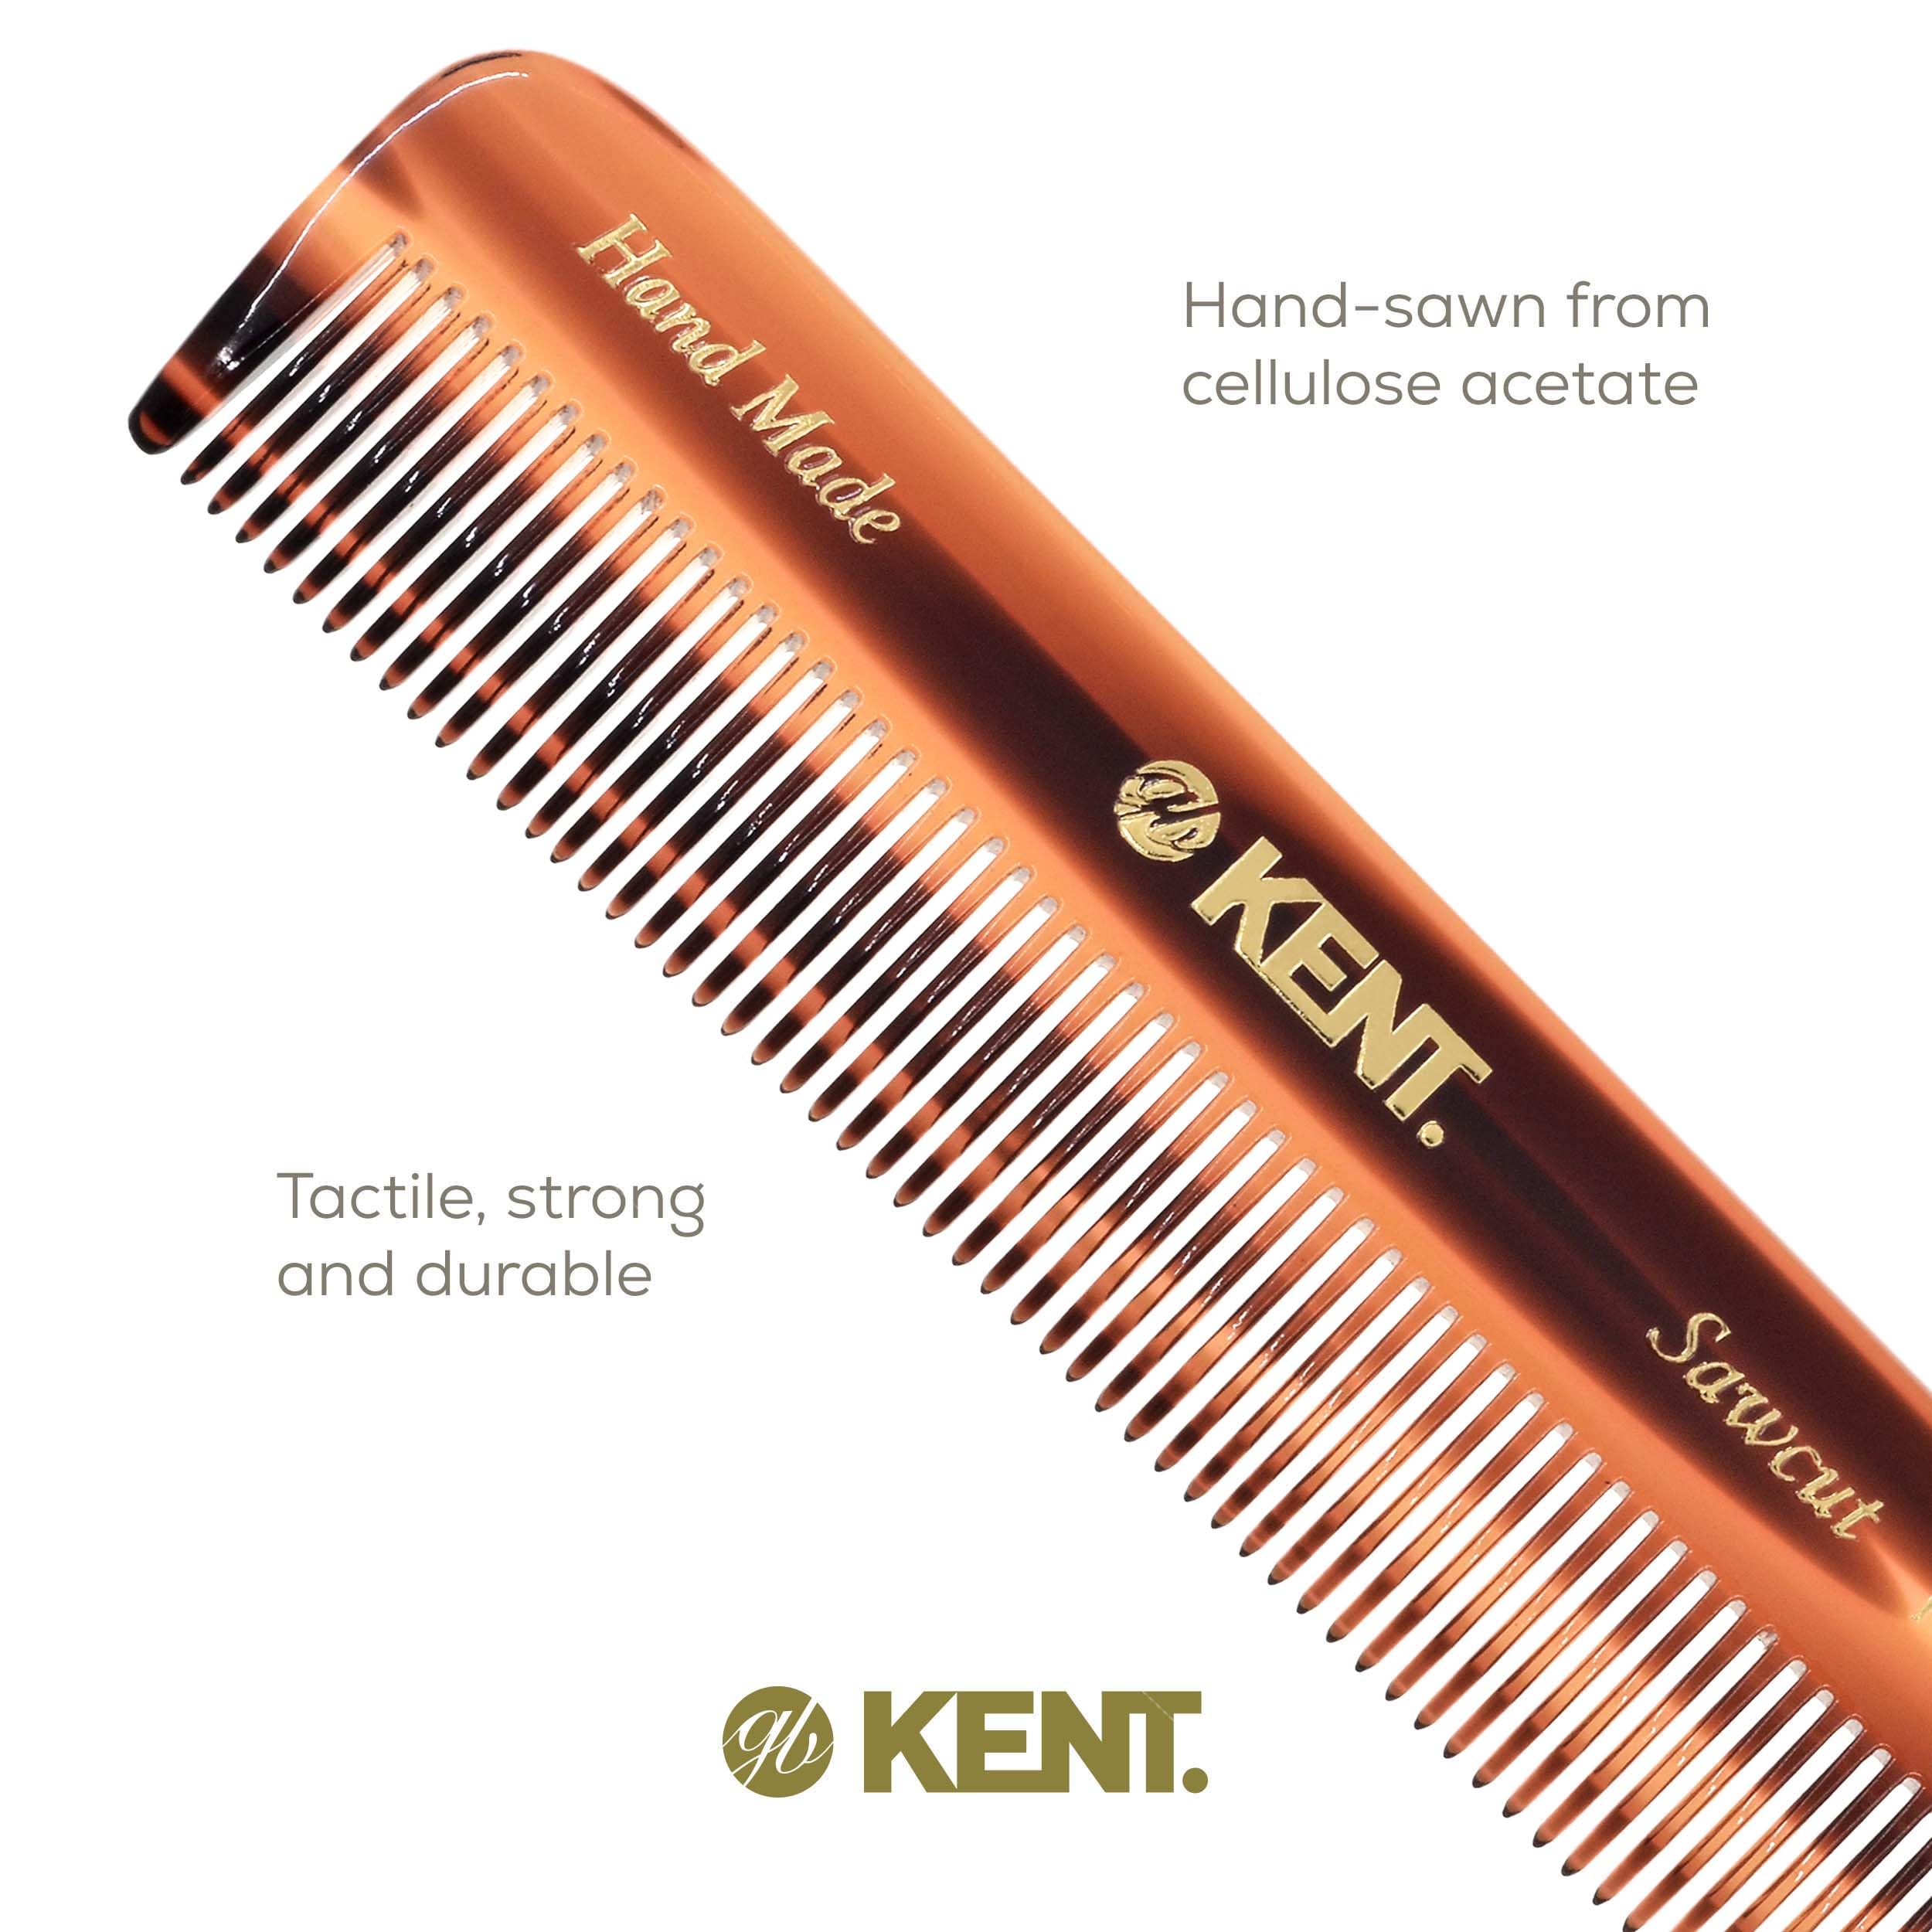 KENT( kent ) men's pocket comb FOT 1 piece (x 1)